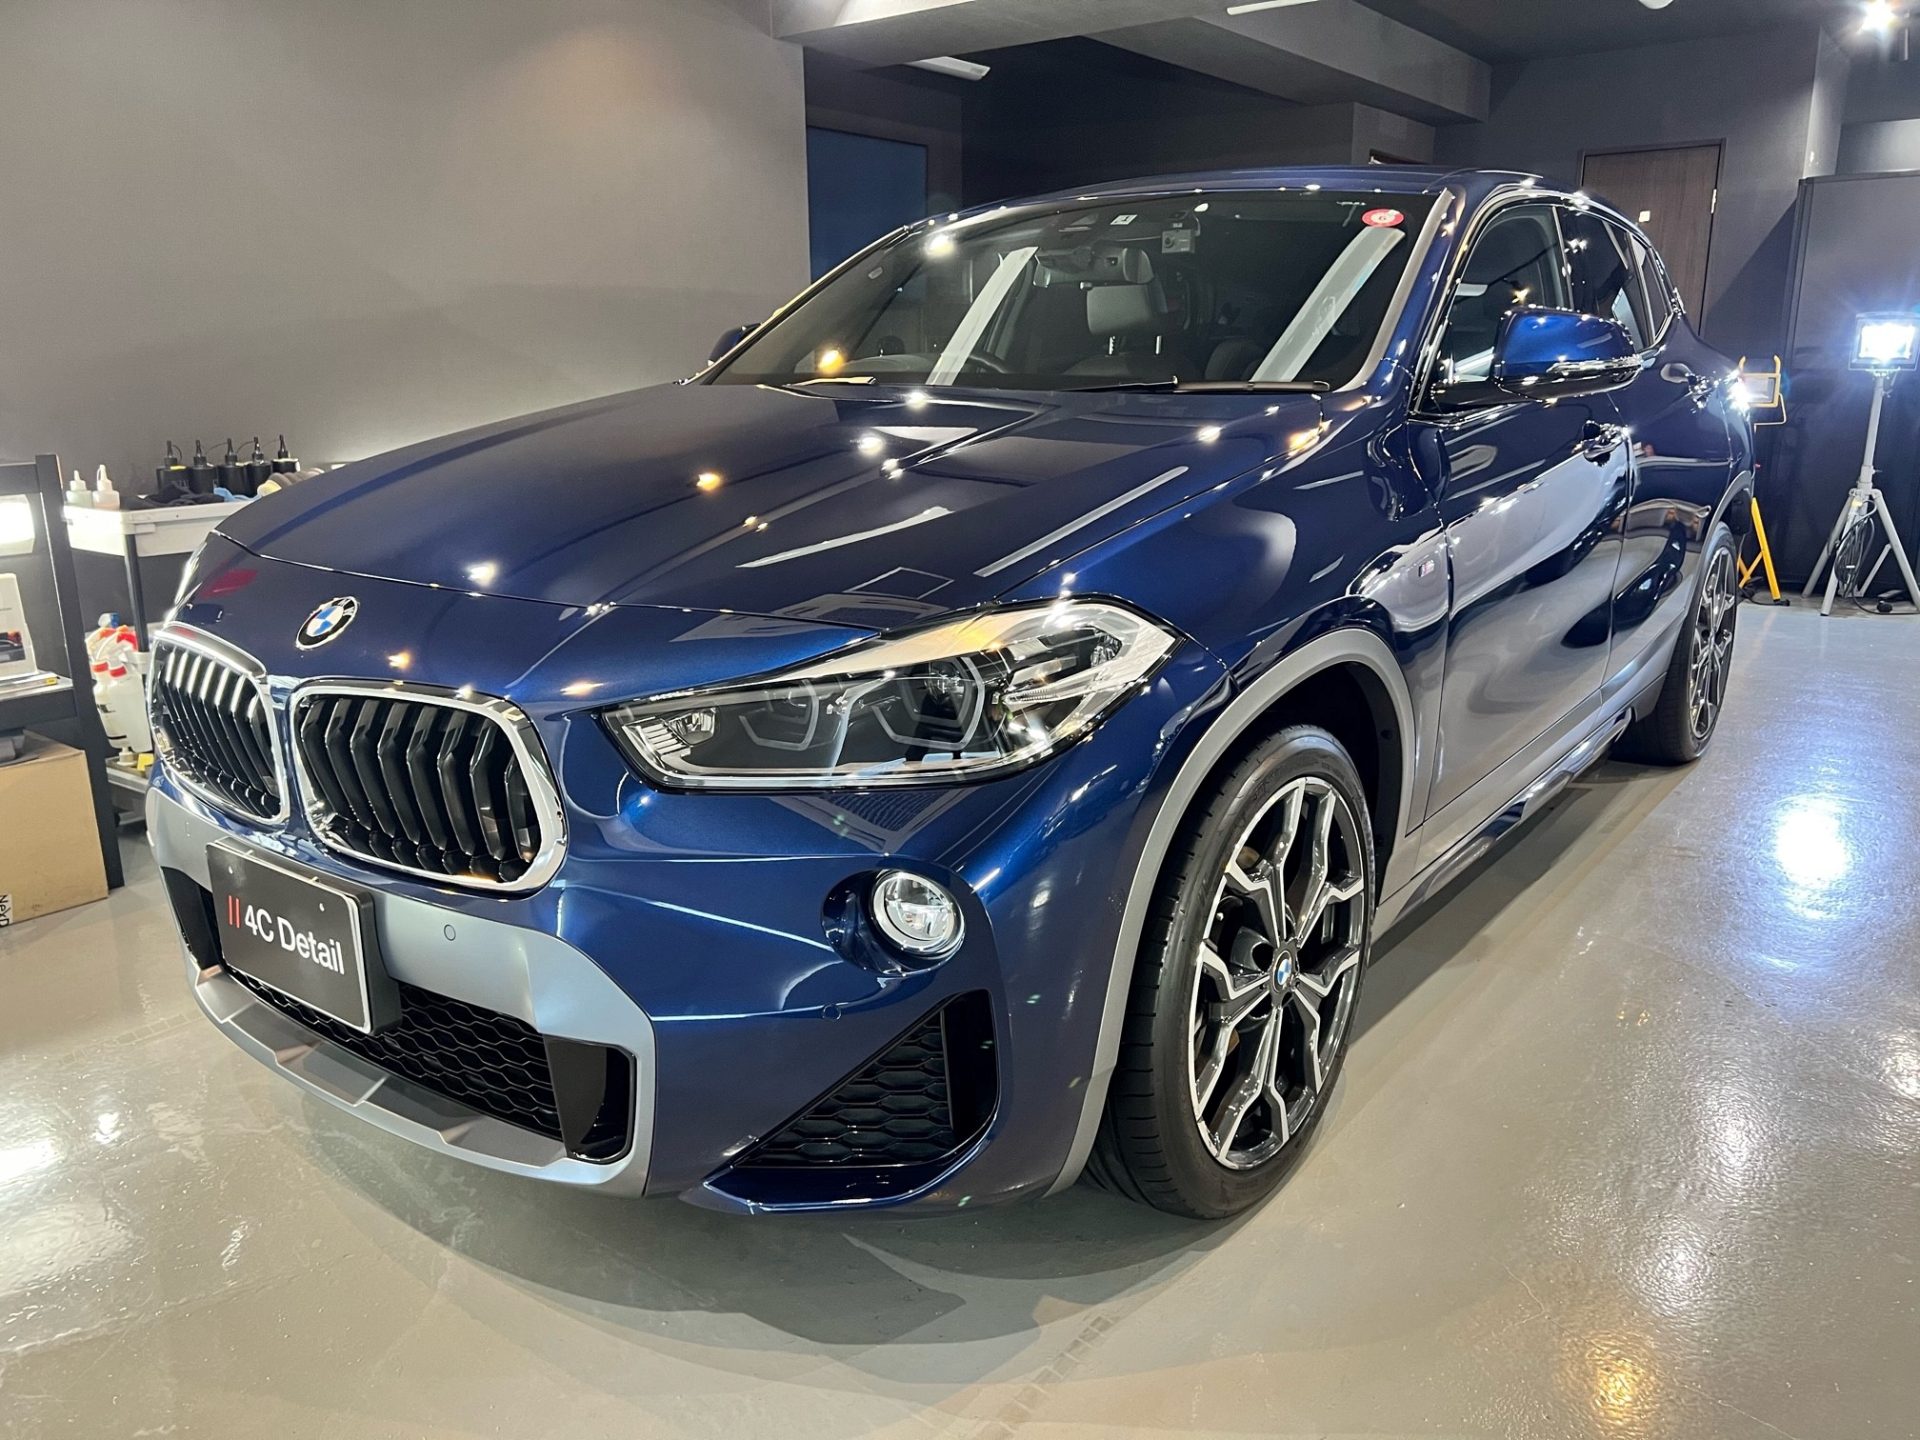 2019年式BMW X2 ナノクリスタルワンガラスコーティング施工 横浜市保土ヶ谷区